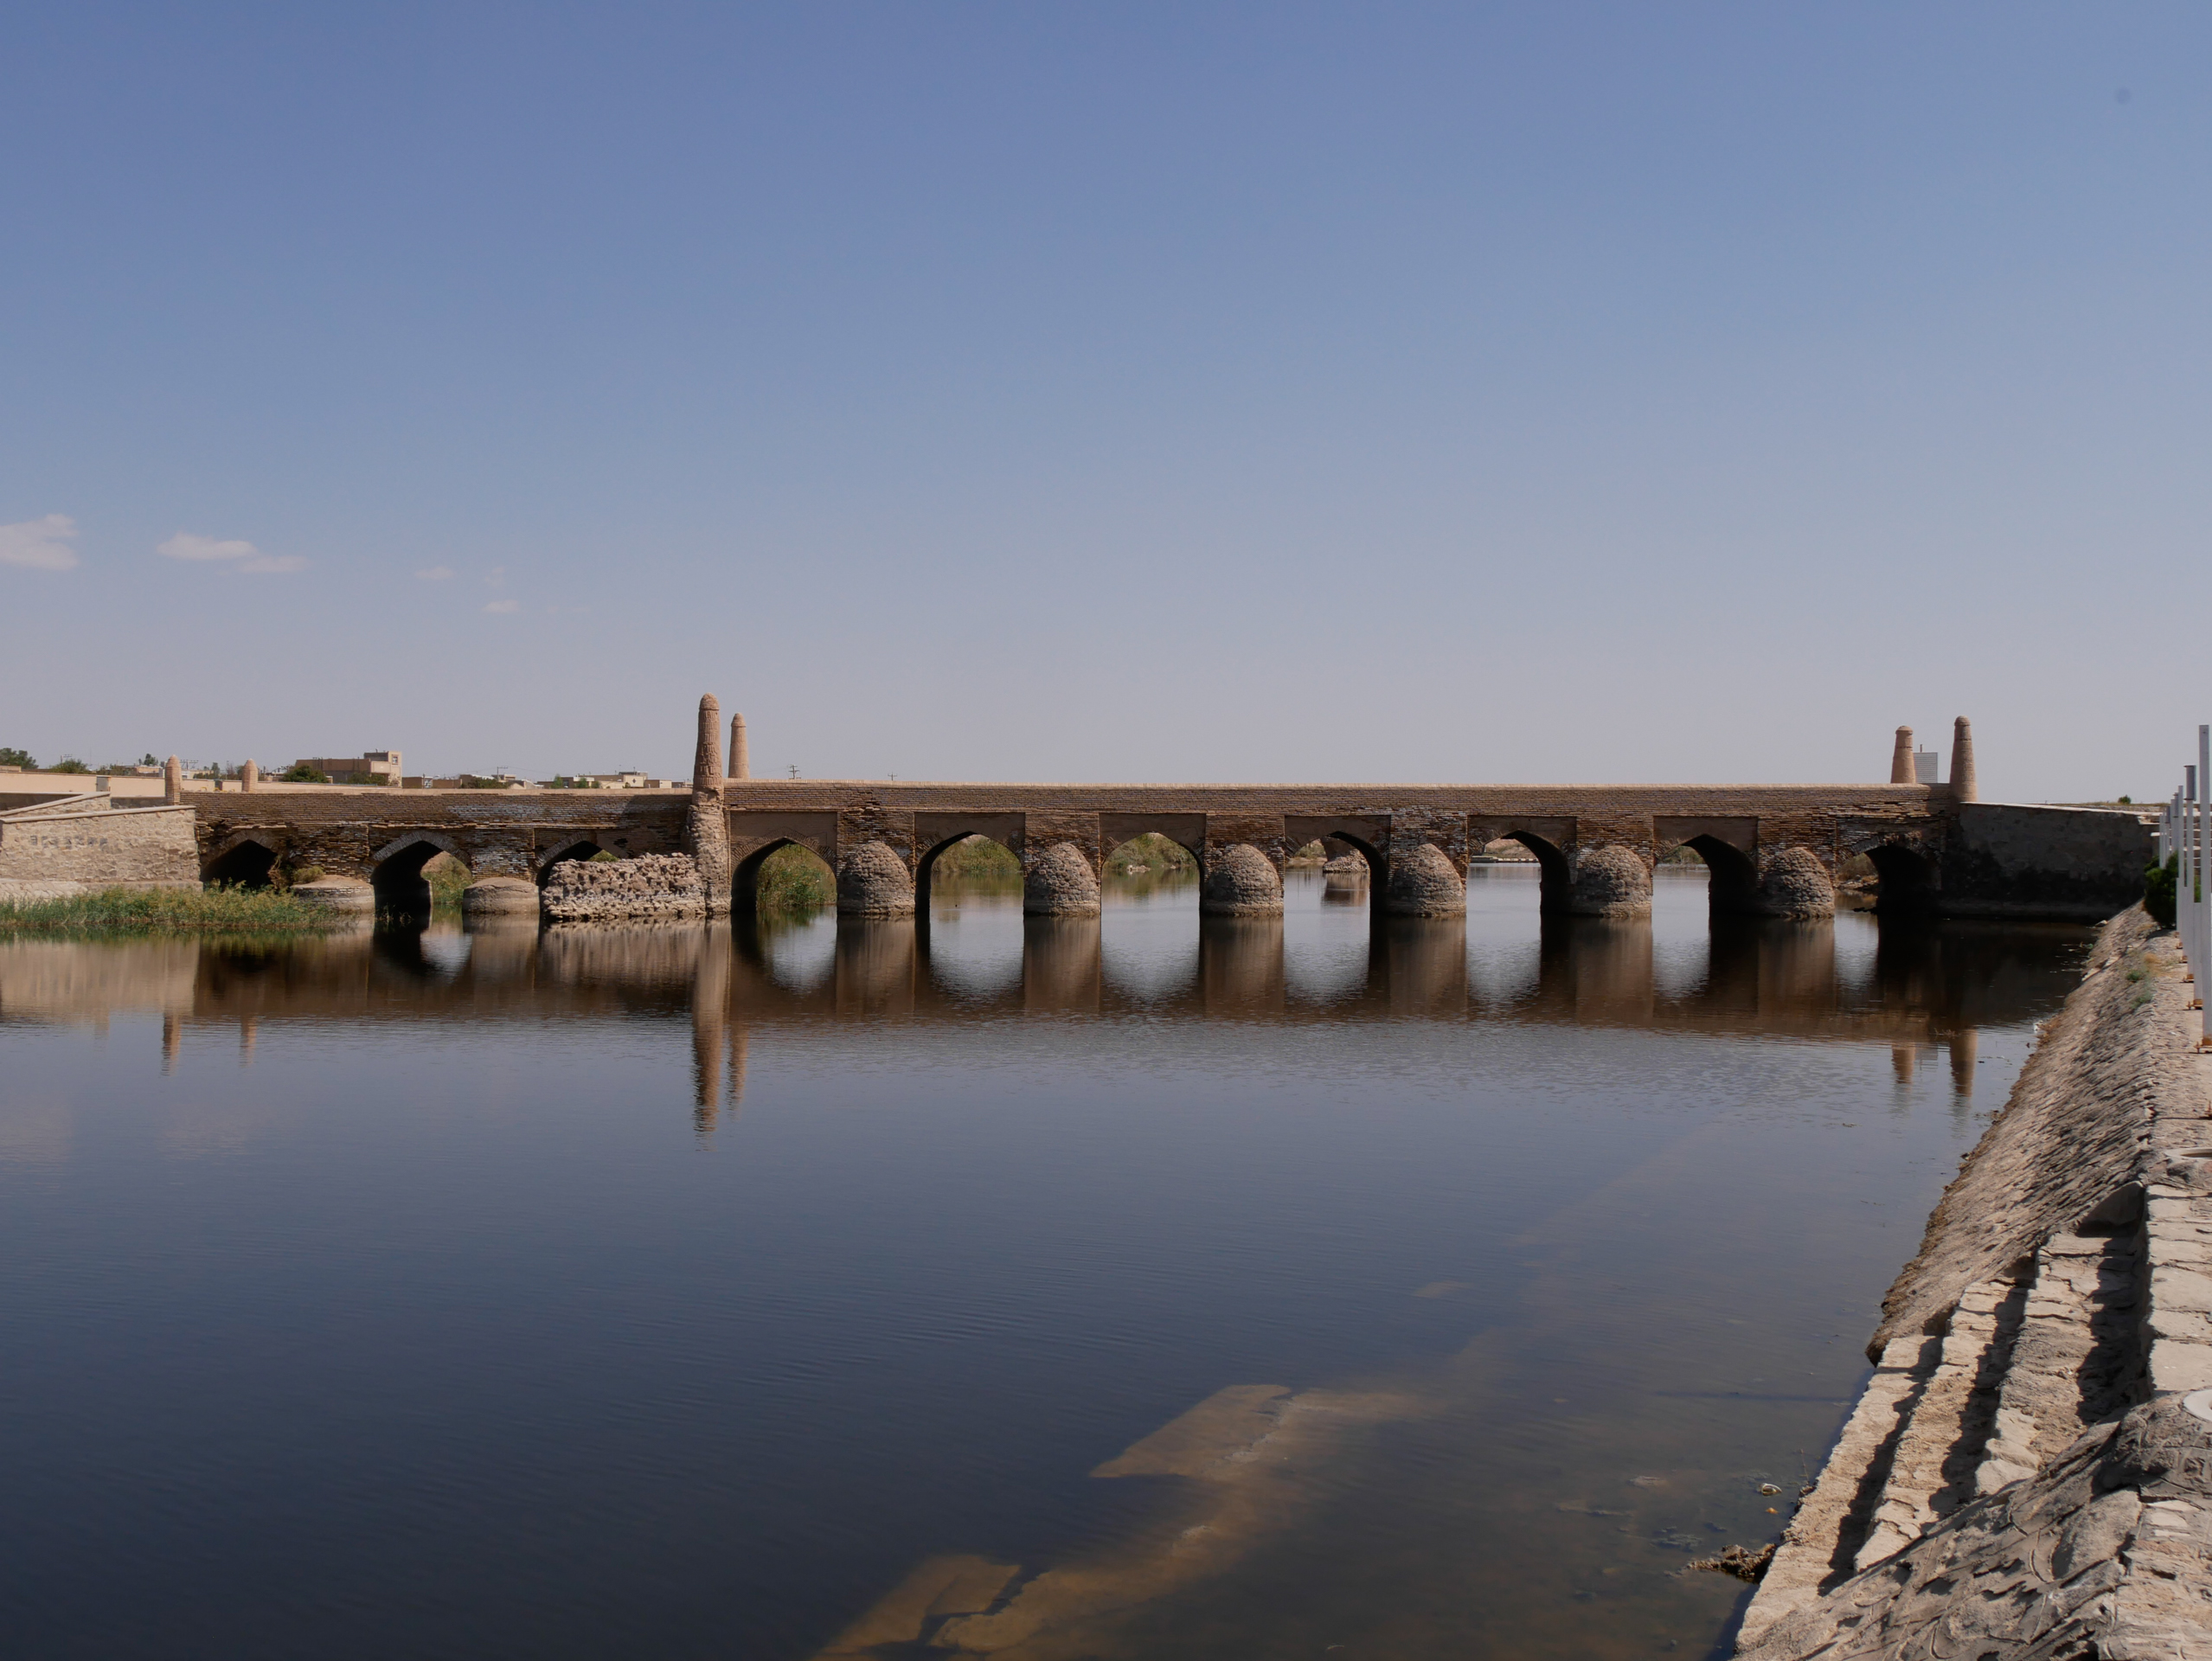 Arrêt au pont sur la rivière Zayandehroud vieux de 900 ans